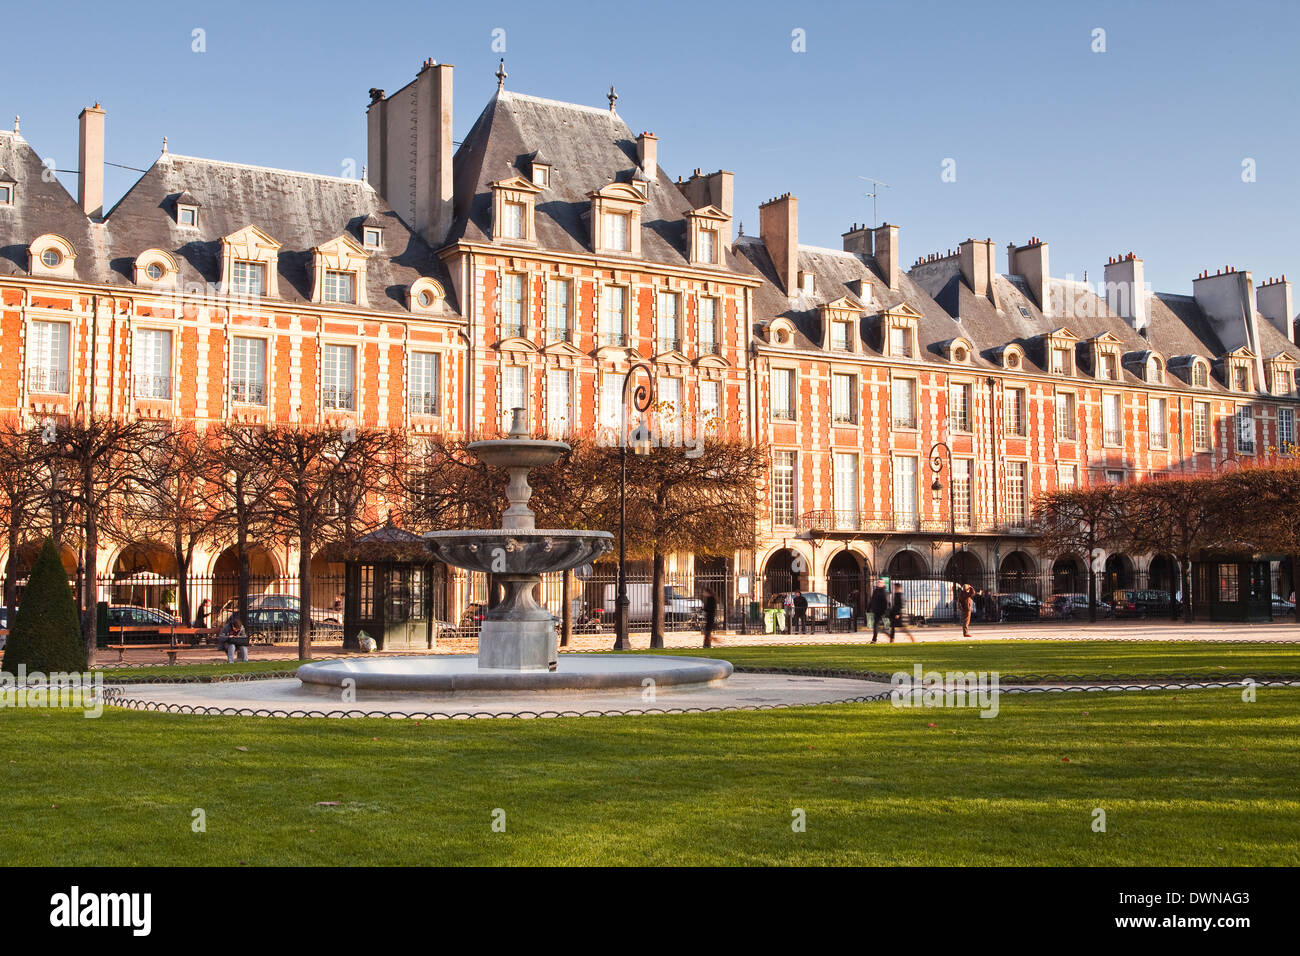 Place des Vosges, la plus ancienne place de Paris prévues, quartier du Marais, Paris, France, Europe Banque D'Images